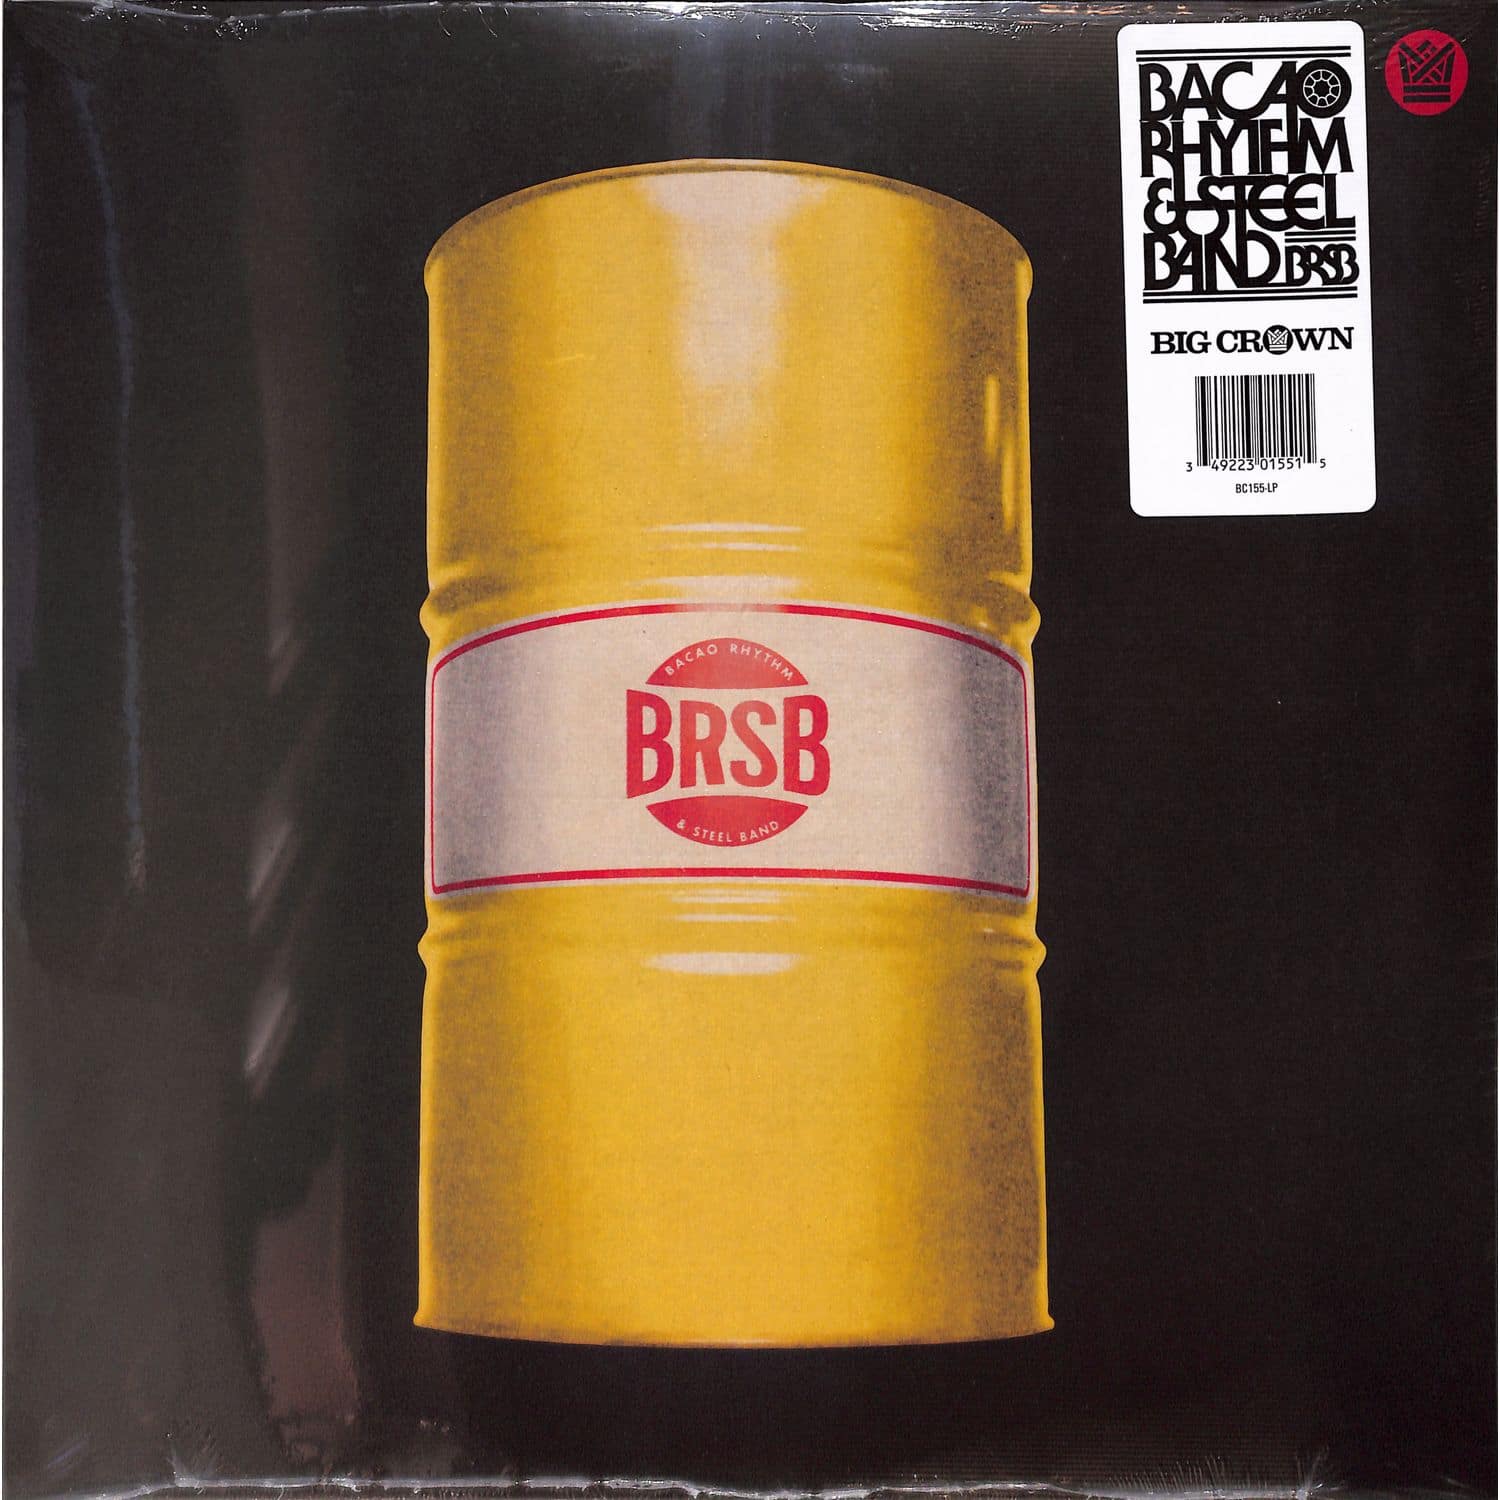 Bacao Rhythm & Steel Band - BRSB 